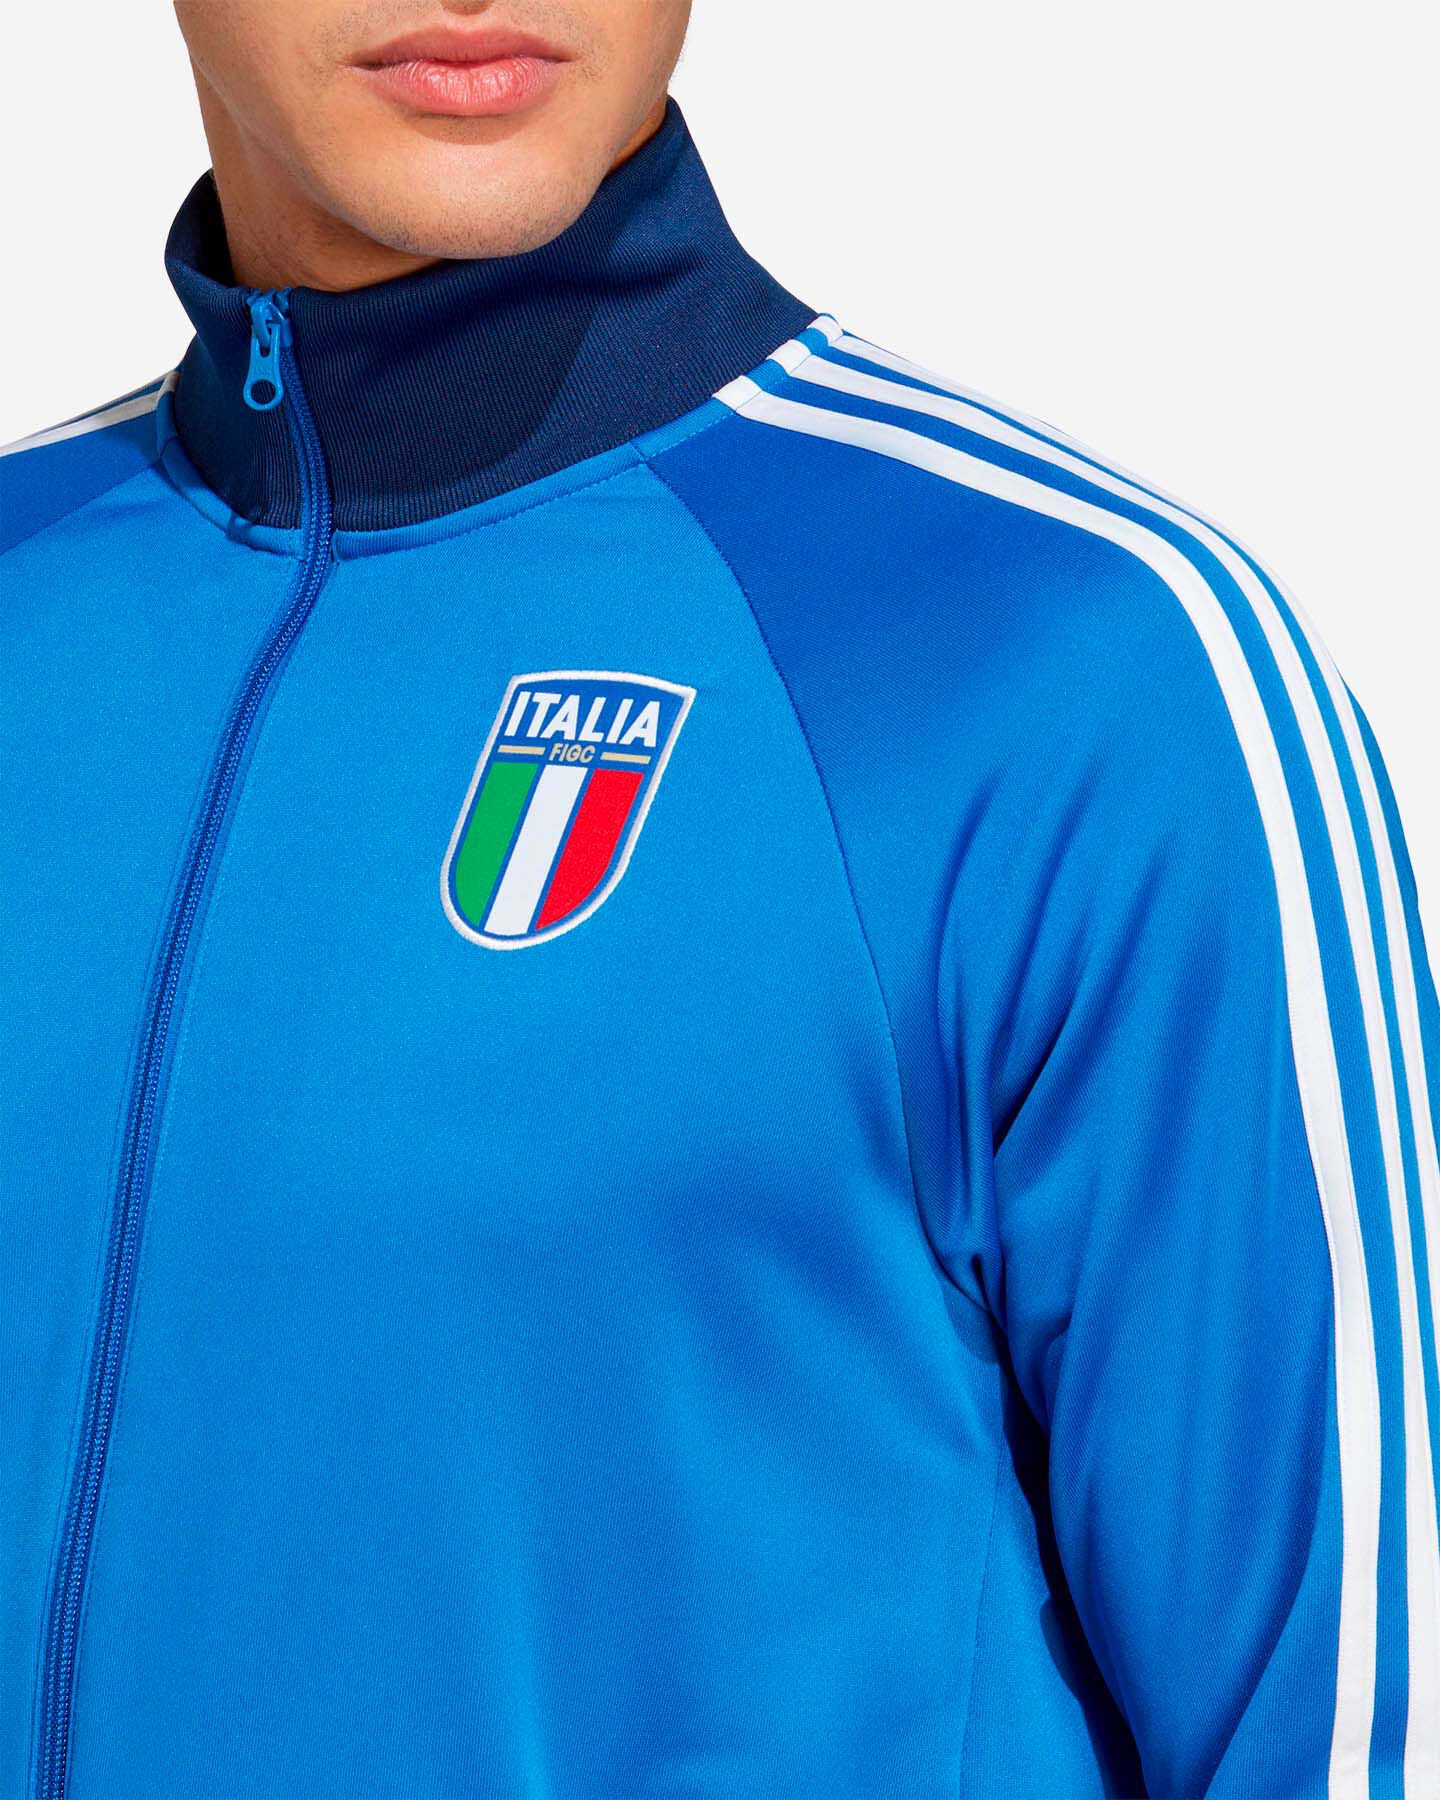  Abbigliamento calcio ADIDAS ITALIA FIGC DNA TT M S5544734|UNI|M scatto 4